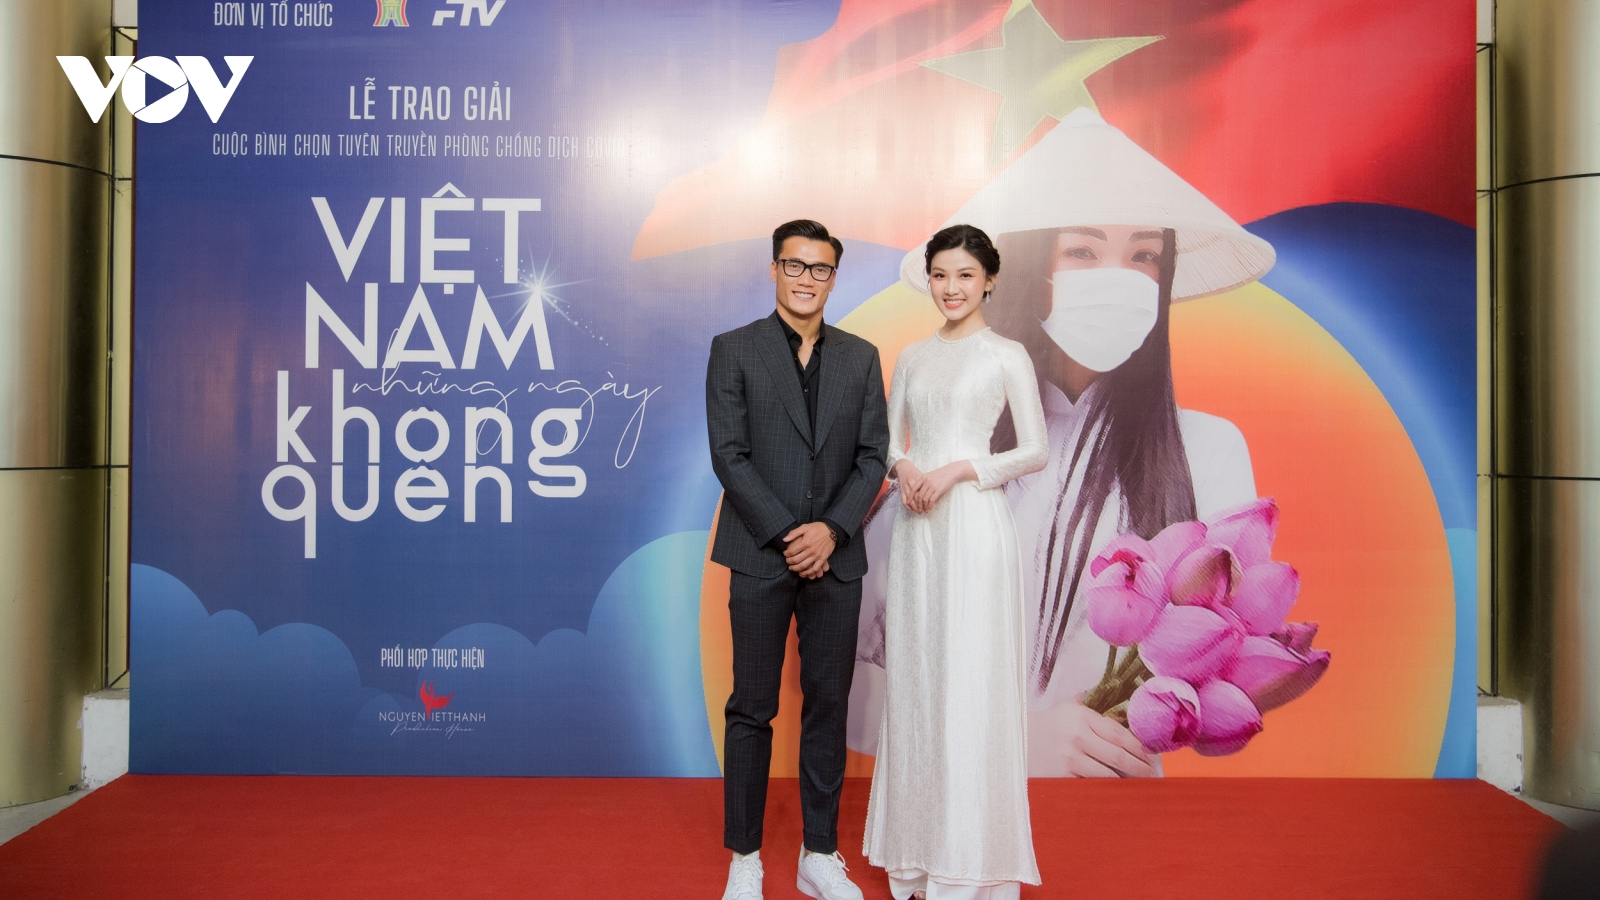 Lương Thanh "sát cánh" Bùi Tiến Dũng tại lễ trao giải "Việt Nam - những ngày không quên"